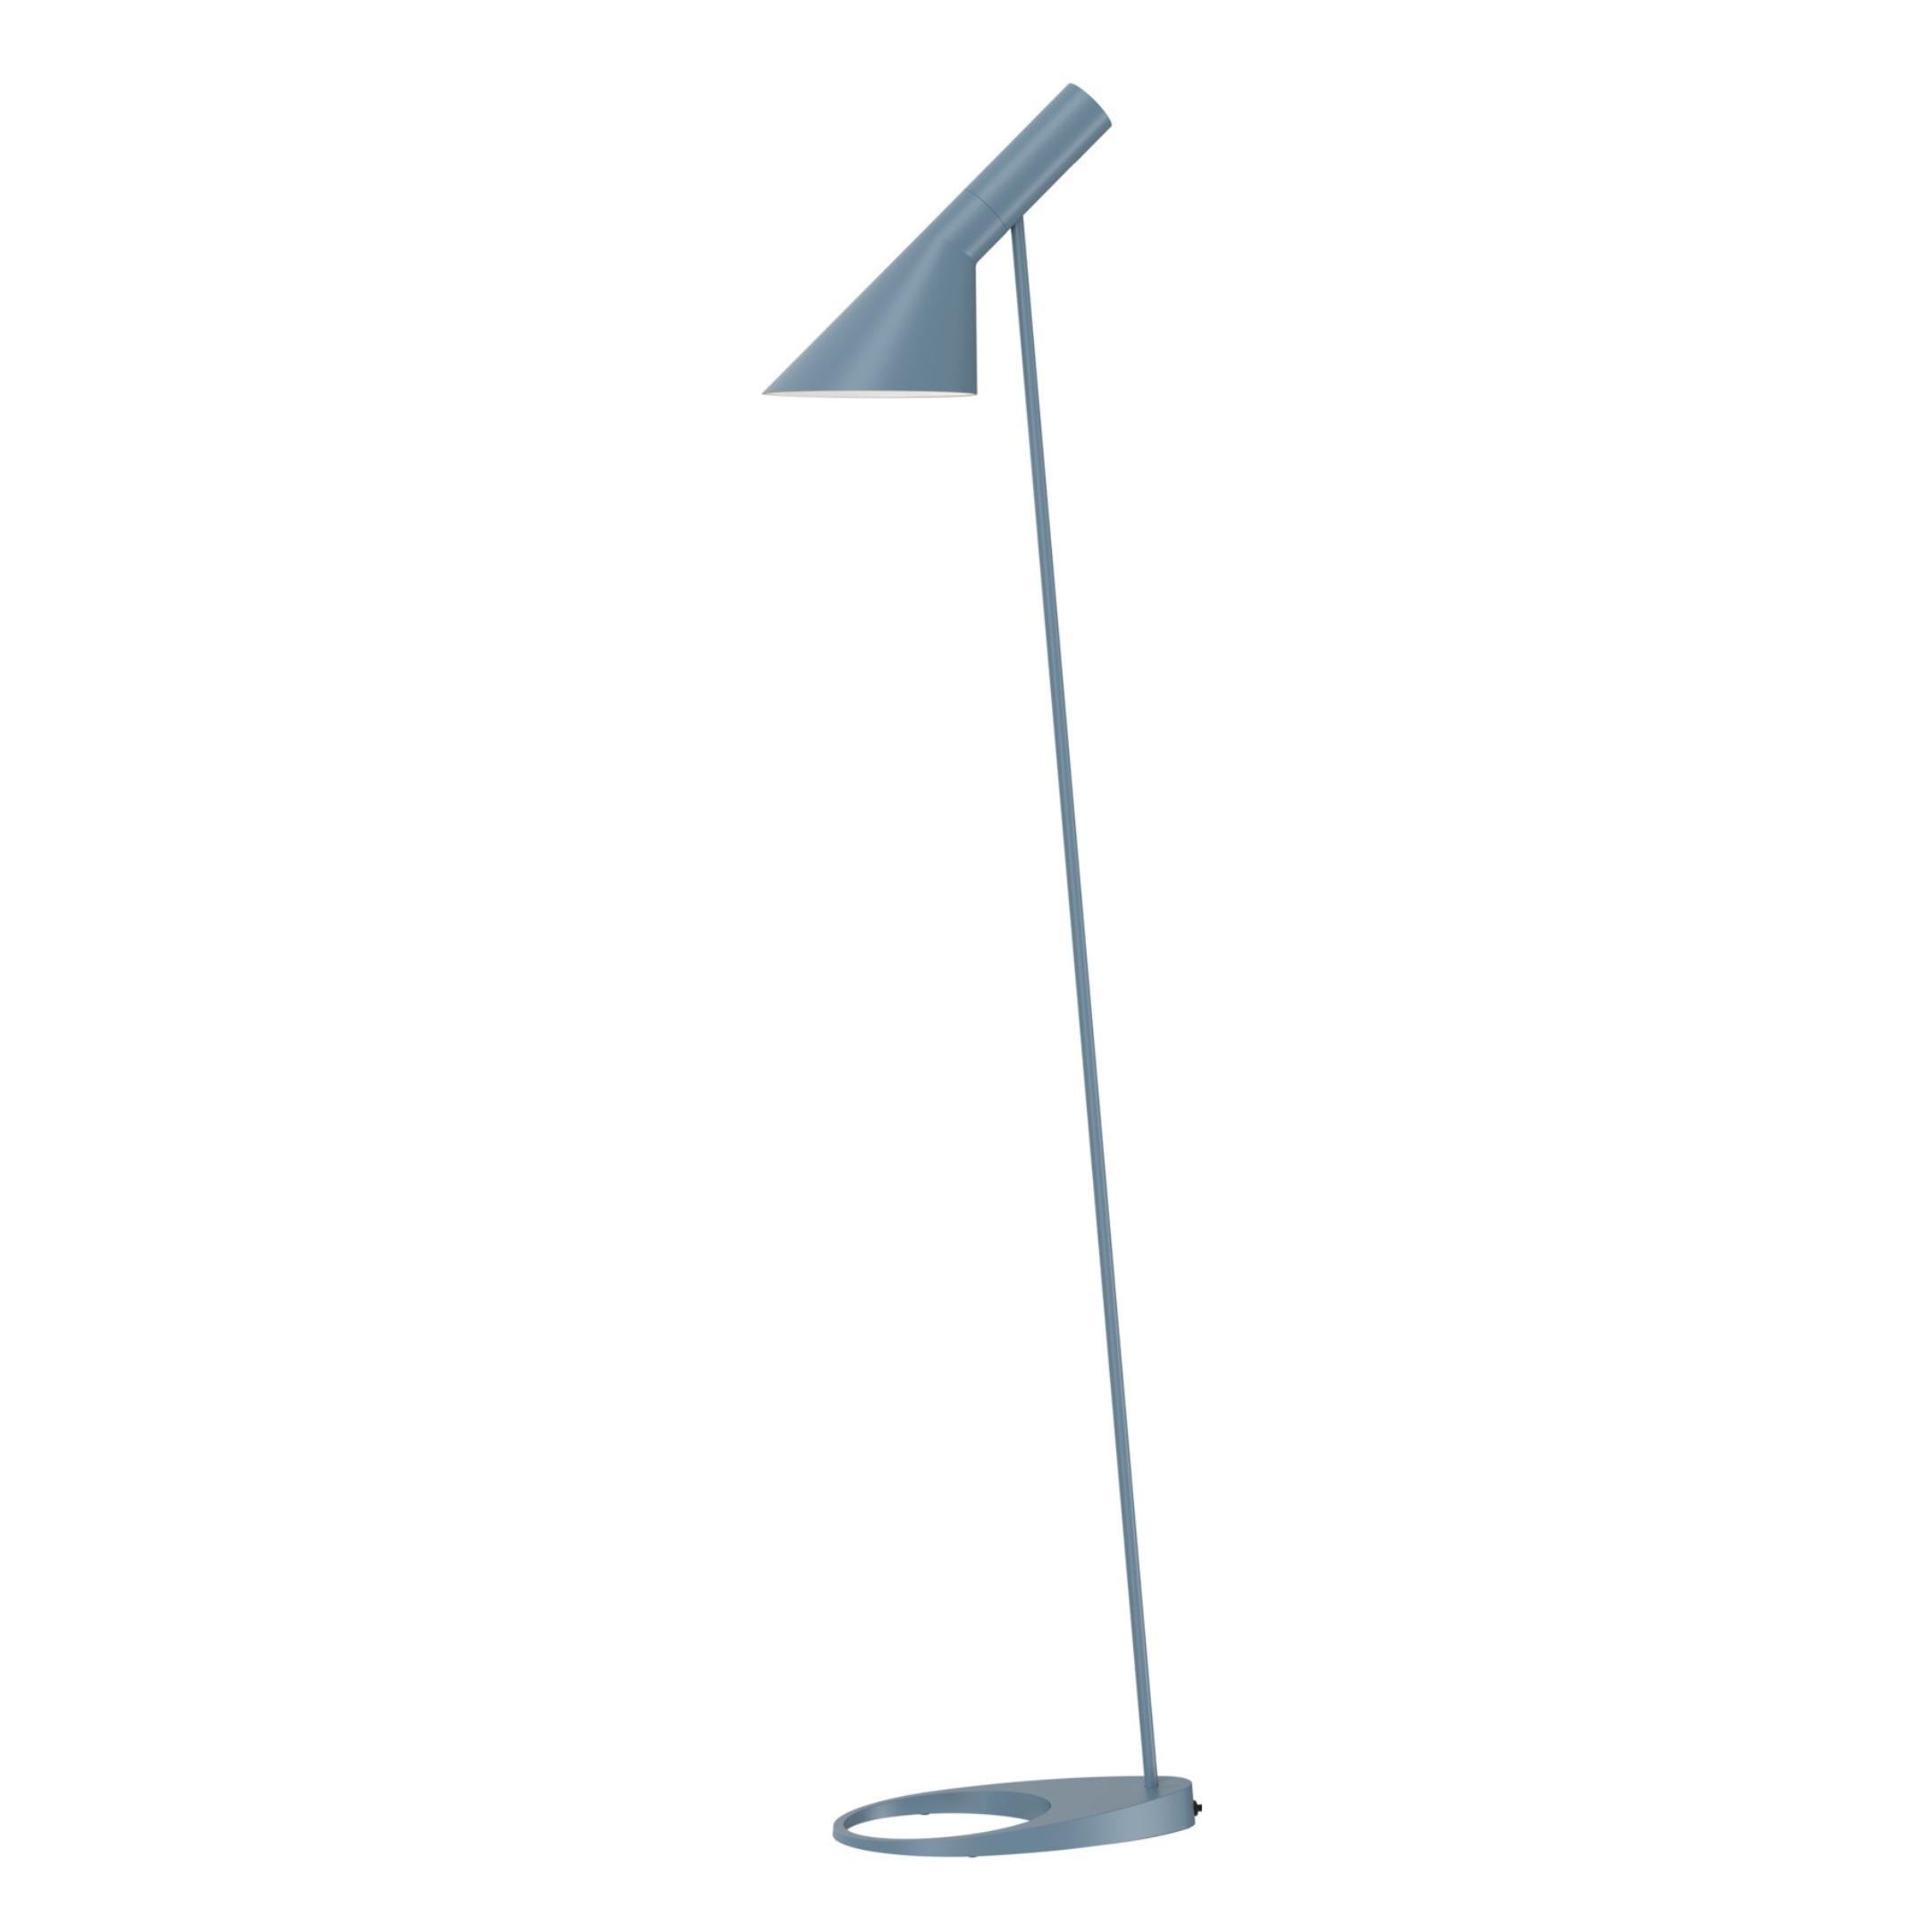 Arne Jacobsen AJ Floor Lamp in White for Louis Poulsen For Sale 5